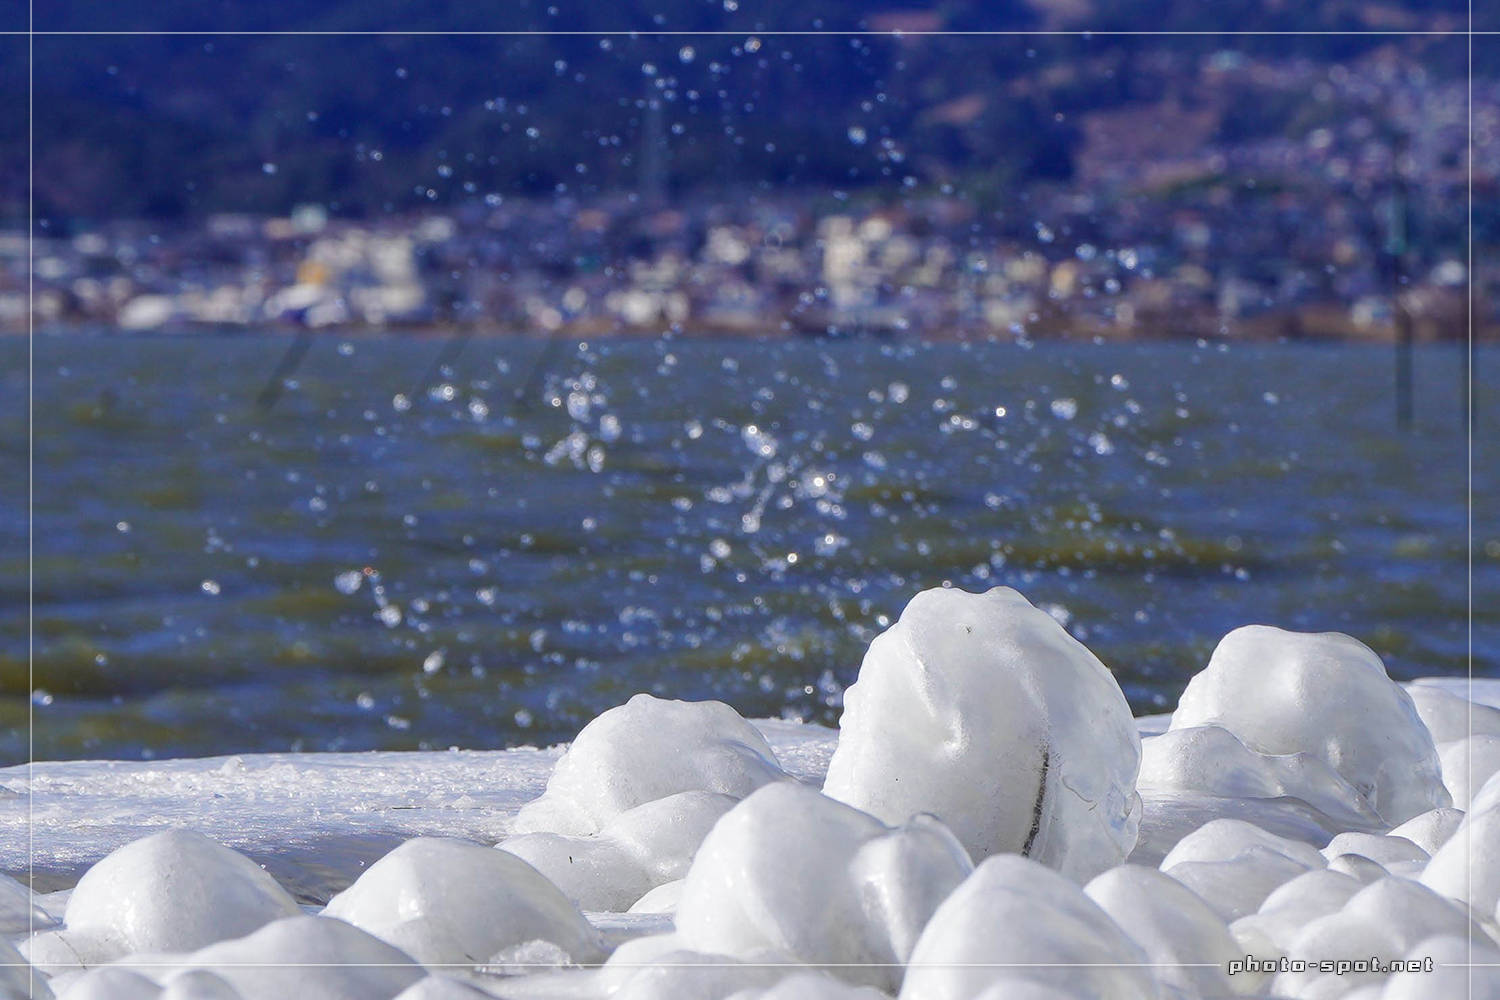 琵琶湖に氷のアート「しぶき氷」が出現。草津の湖岸緑地 津田江1で撮影